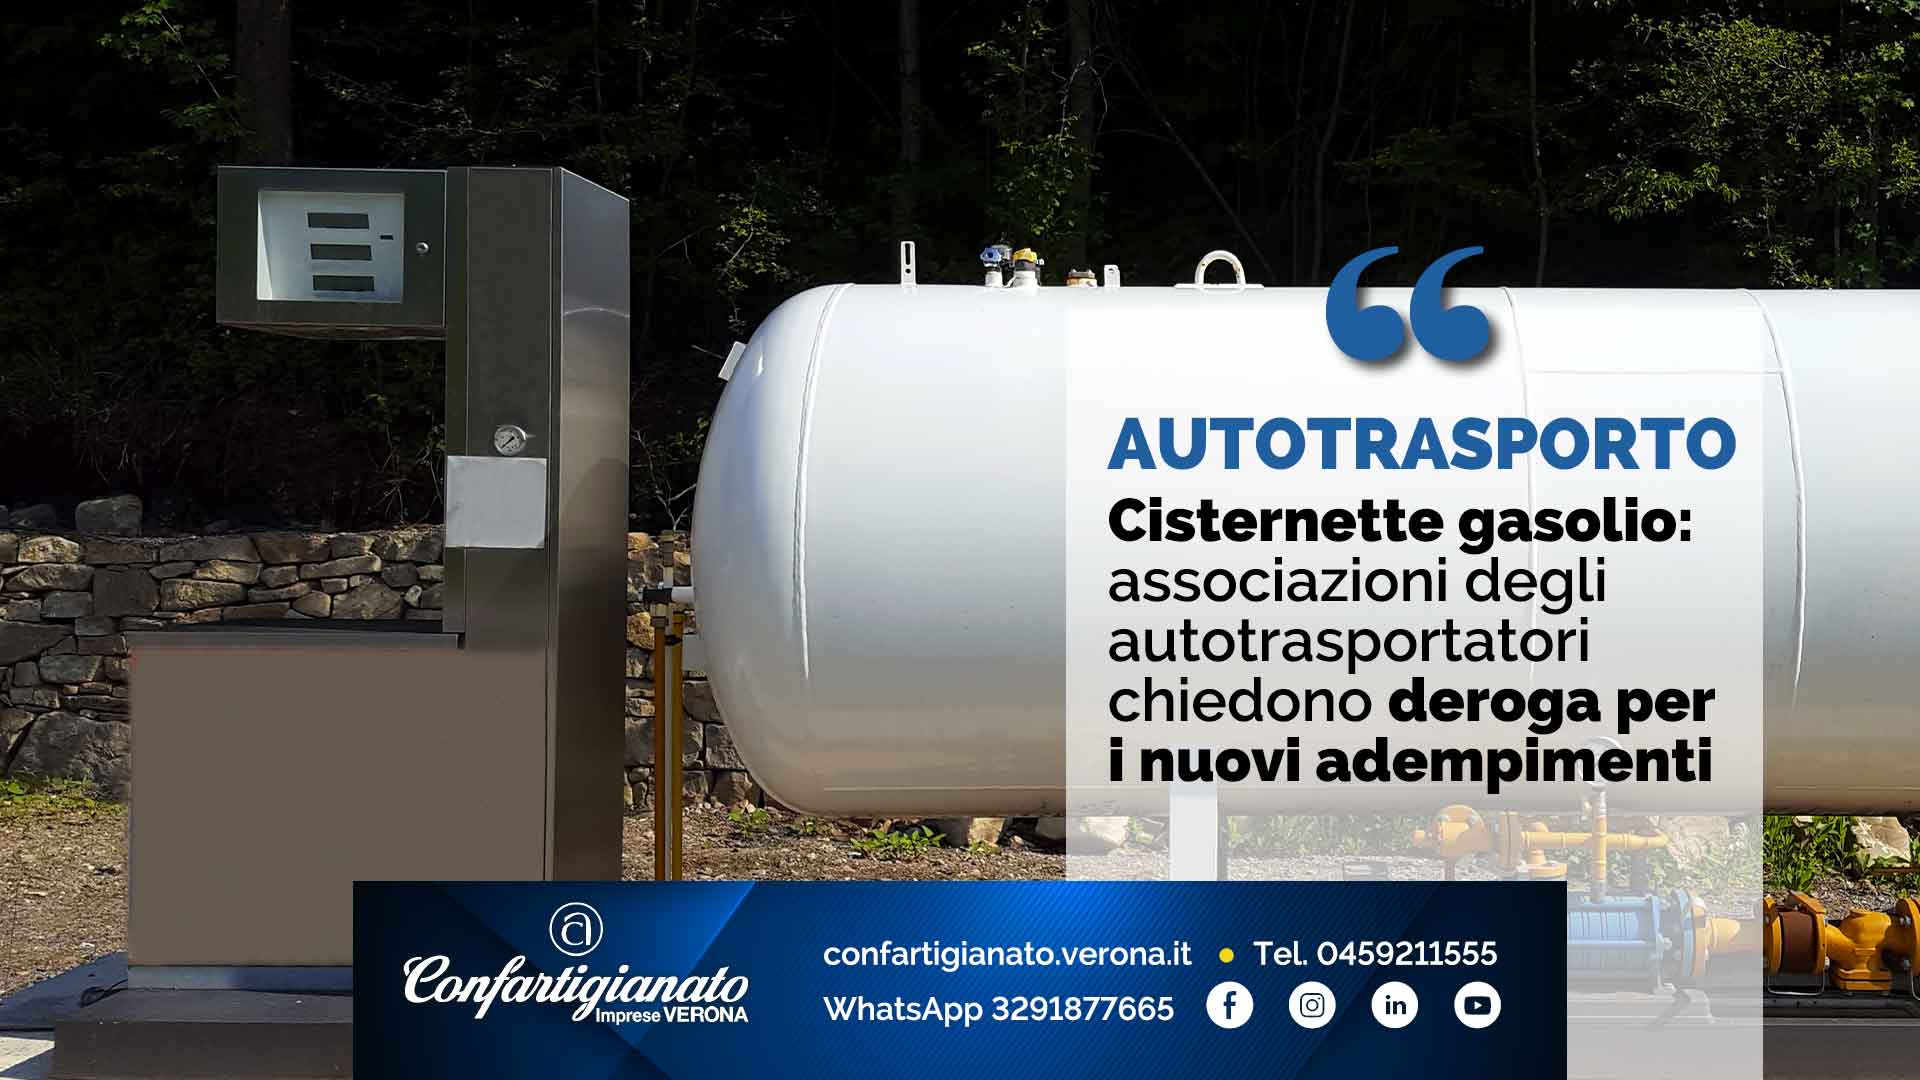 AUTOTRASPORTO – Cisternette gasolio: associazioni autotrasporto chiedono deroga per i nuovi adempimenti